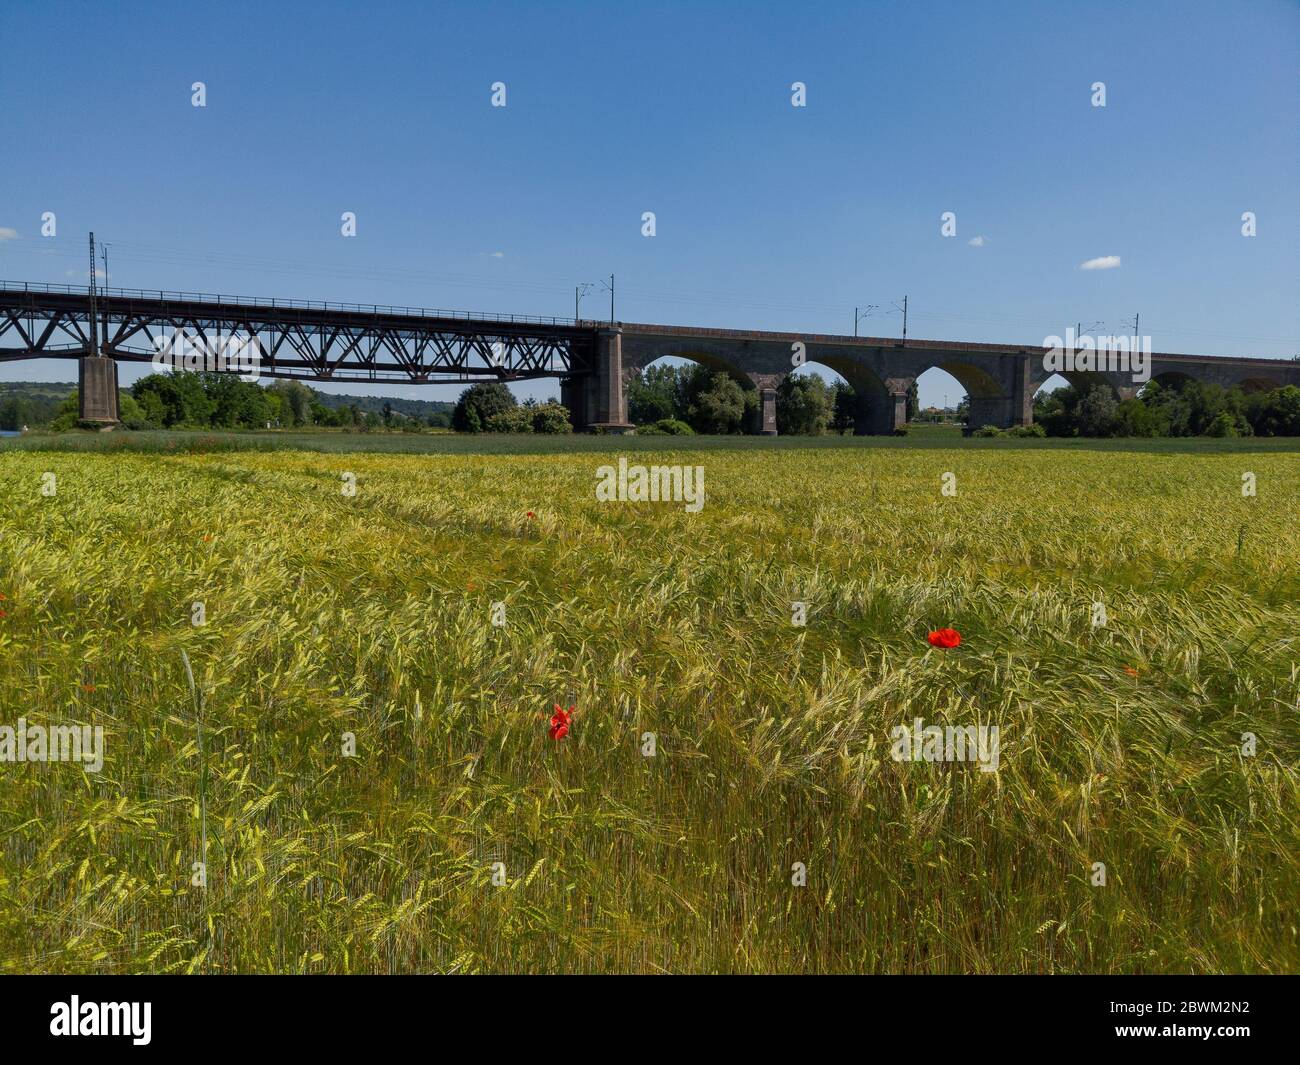 Vista panoramica del vecchio ponte ferroviario con archi in pietra e campo di grano con fiori di papavero rosso vicino a Ratisbona, Baviera, Germania Foto Stock